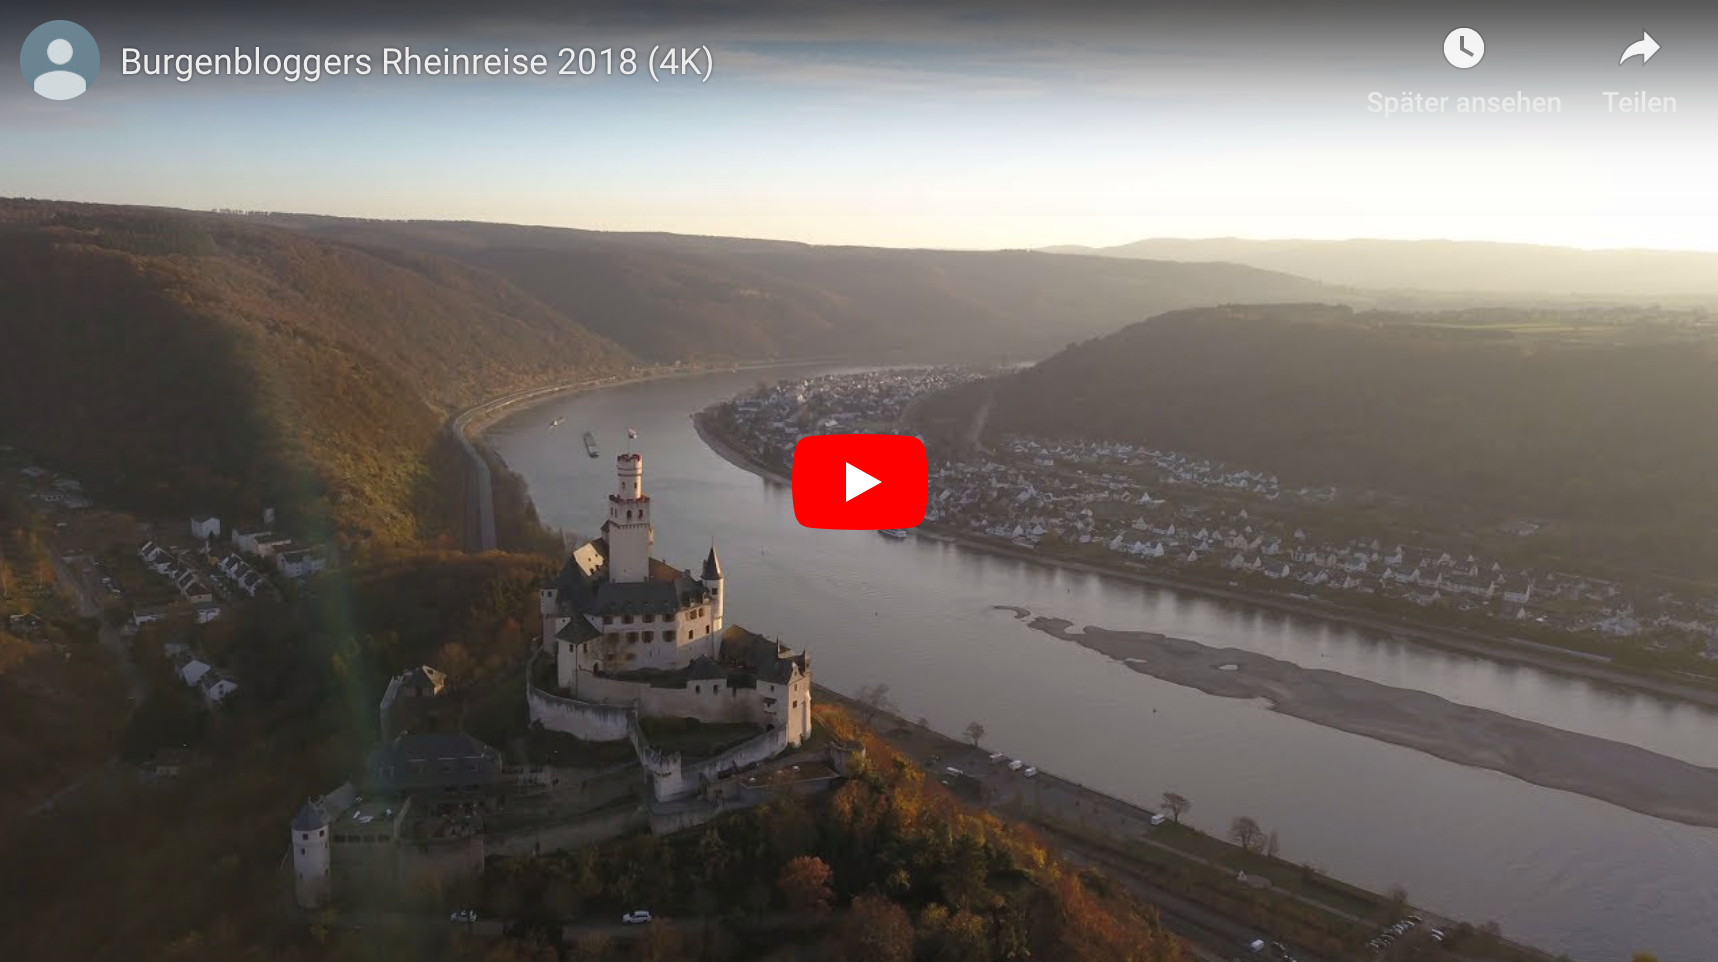 Der Burgenblogger hat ein Video mit Drohnen-Aufnahmen vom Oberen Mittelrheintal veröffentlicht. (Foto: Screenshot des Burgenblogger-Videos)